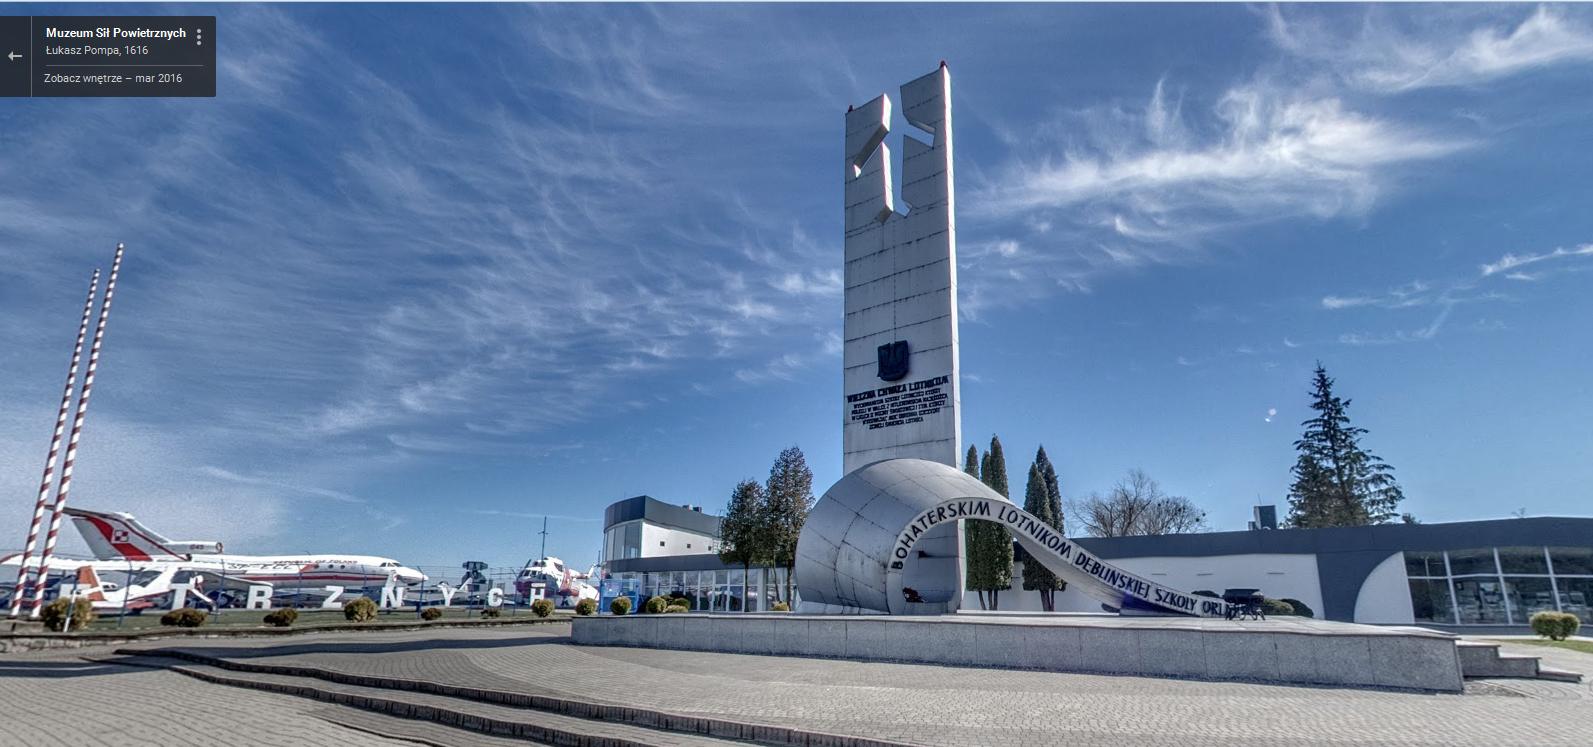 Pomnik Bochaterskich Lotników Dęblińskiej Szkoły Orląt -panorama Google Street View - Muzeum Sił Powietrznych w Dęblinie